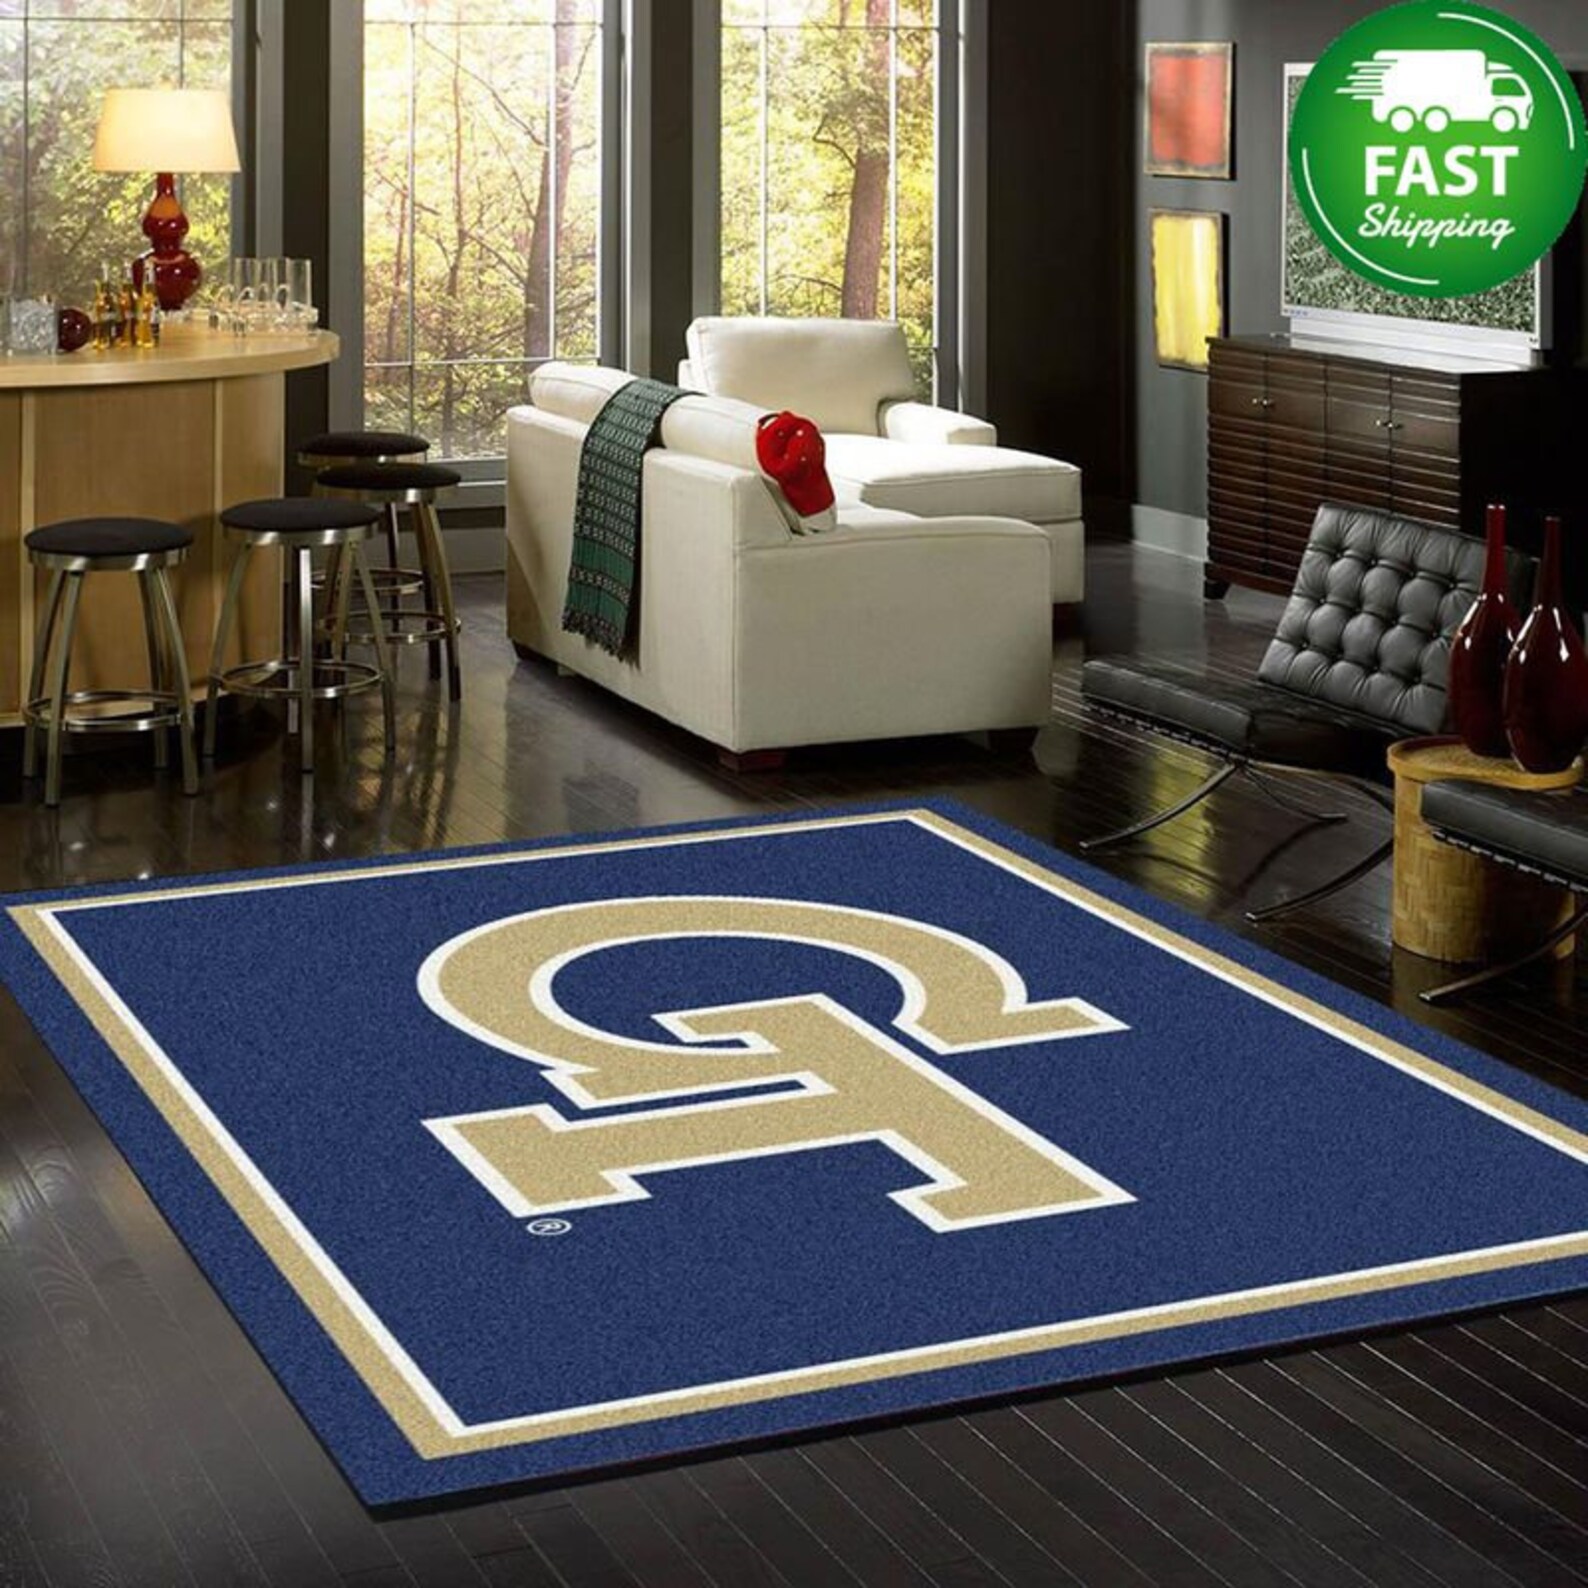 Rug Carpet Living Room Decor | Etsy